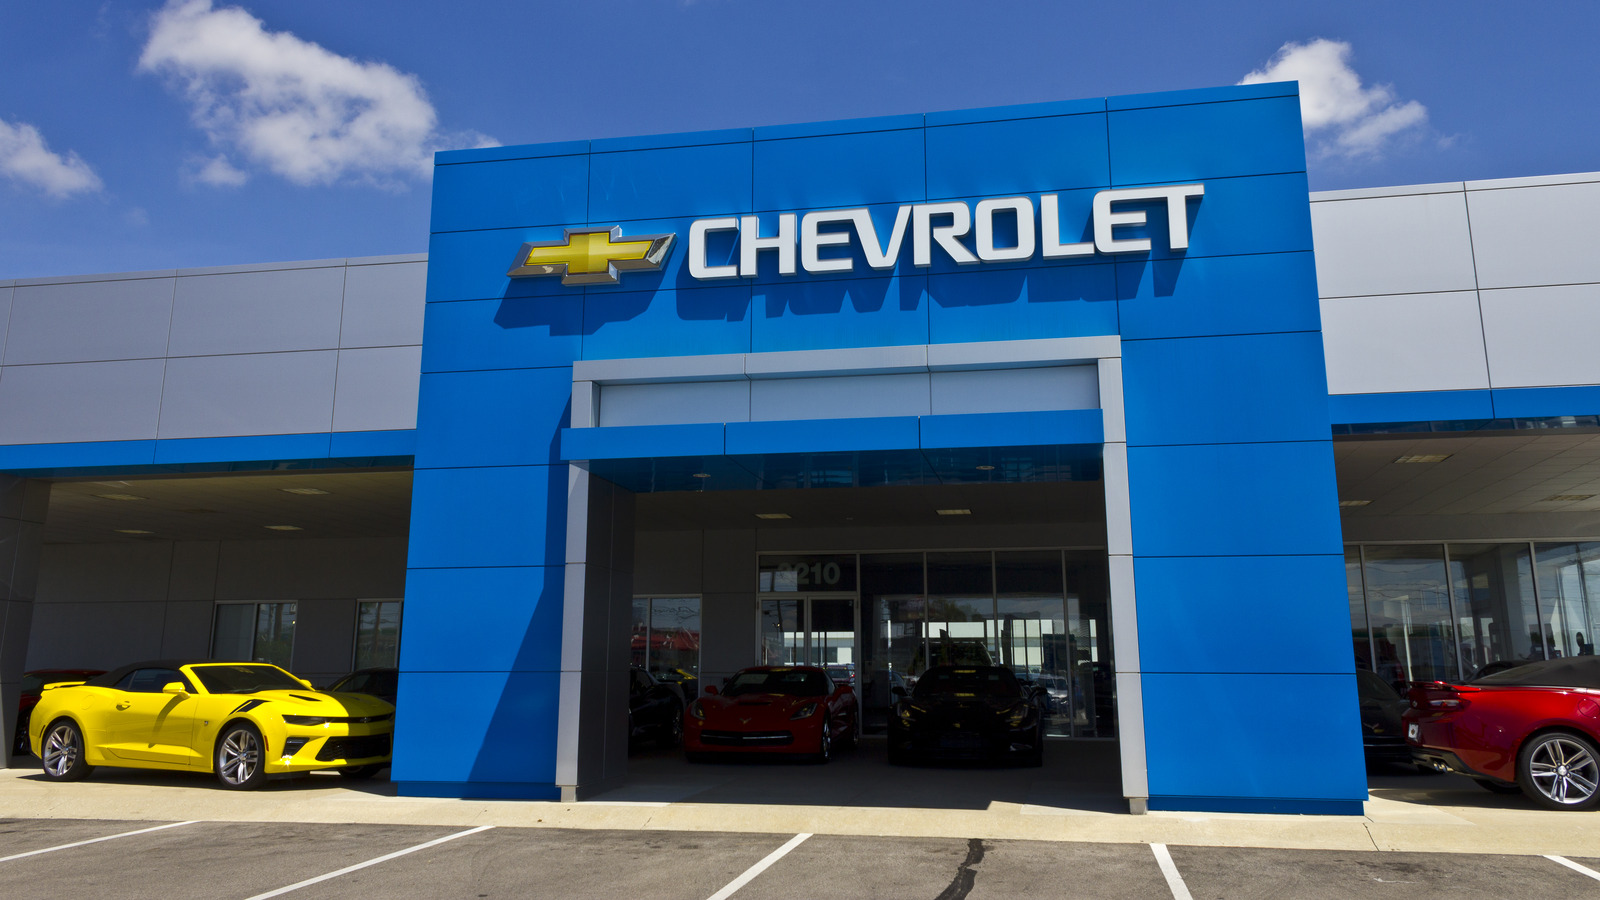 Aquí es donde realmente se fabrican los vehículos Chevrolet para el mercado estadounidense